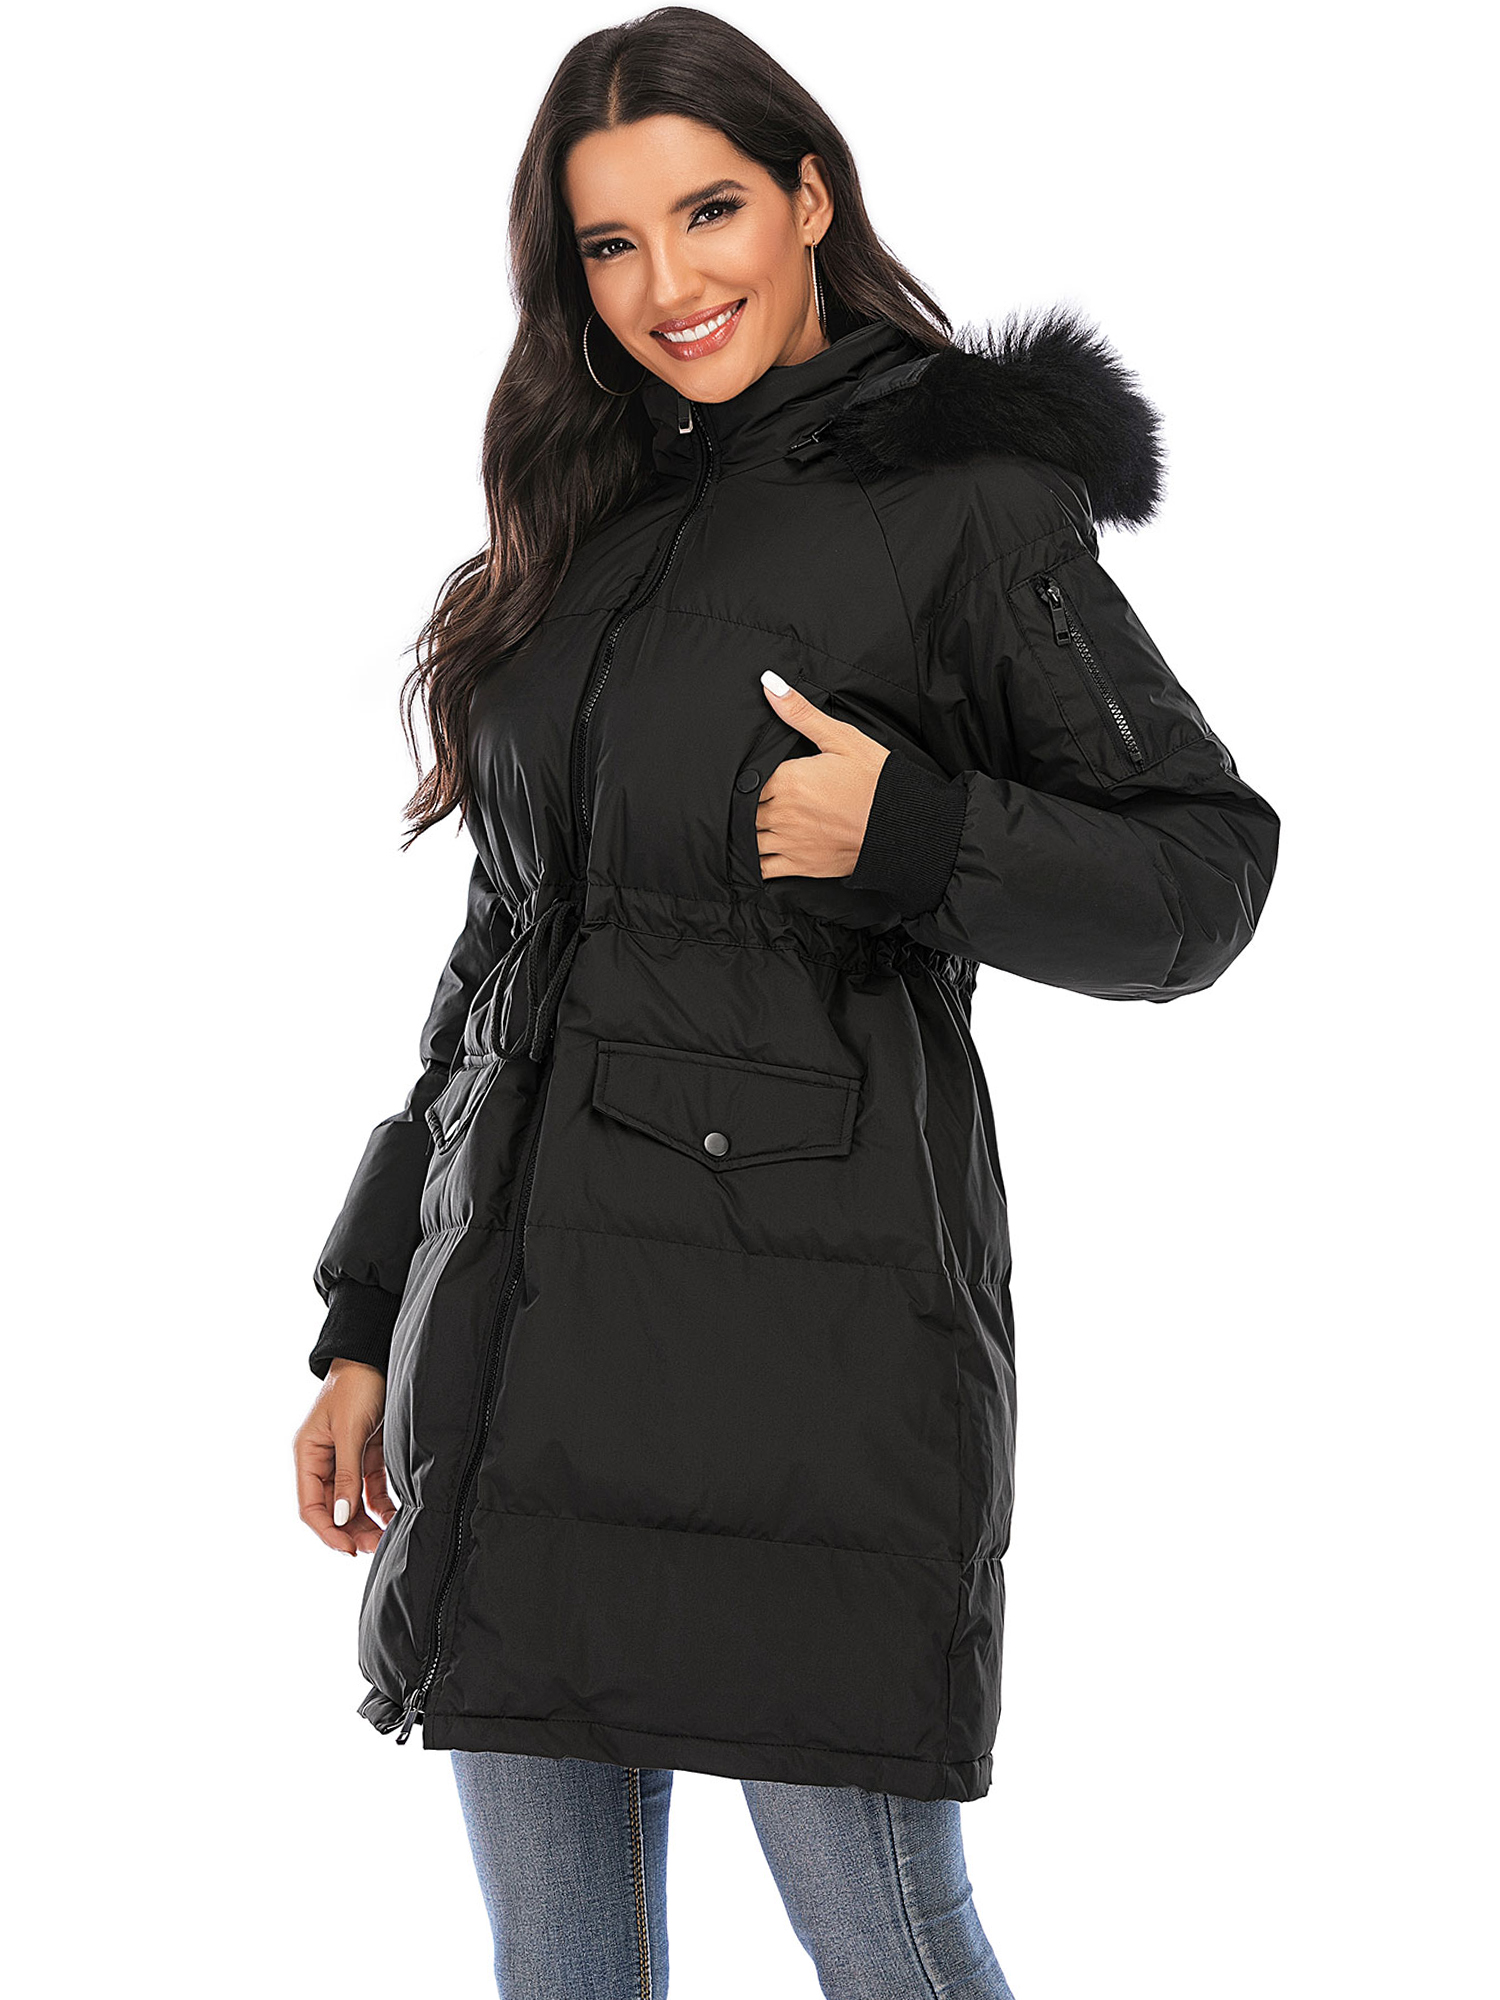 LELINTA Women Winter Plus Size Long Hoodie Coat Warm Jacket Zipper Parka Overcoats Raincoat Active Outdoor Trench Coat - image 1 of 7